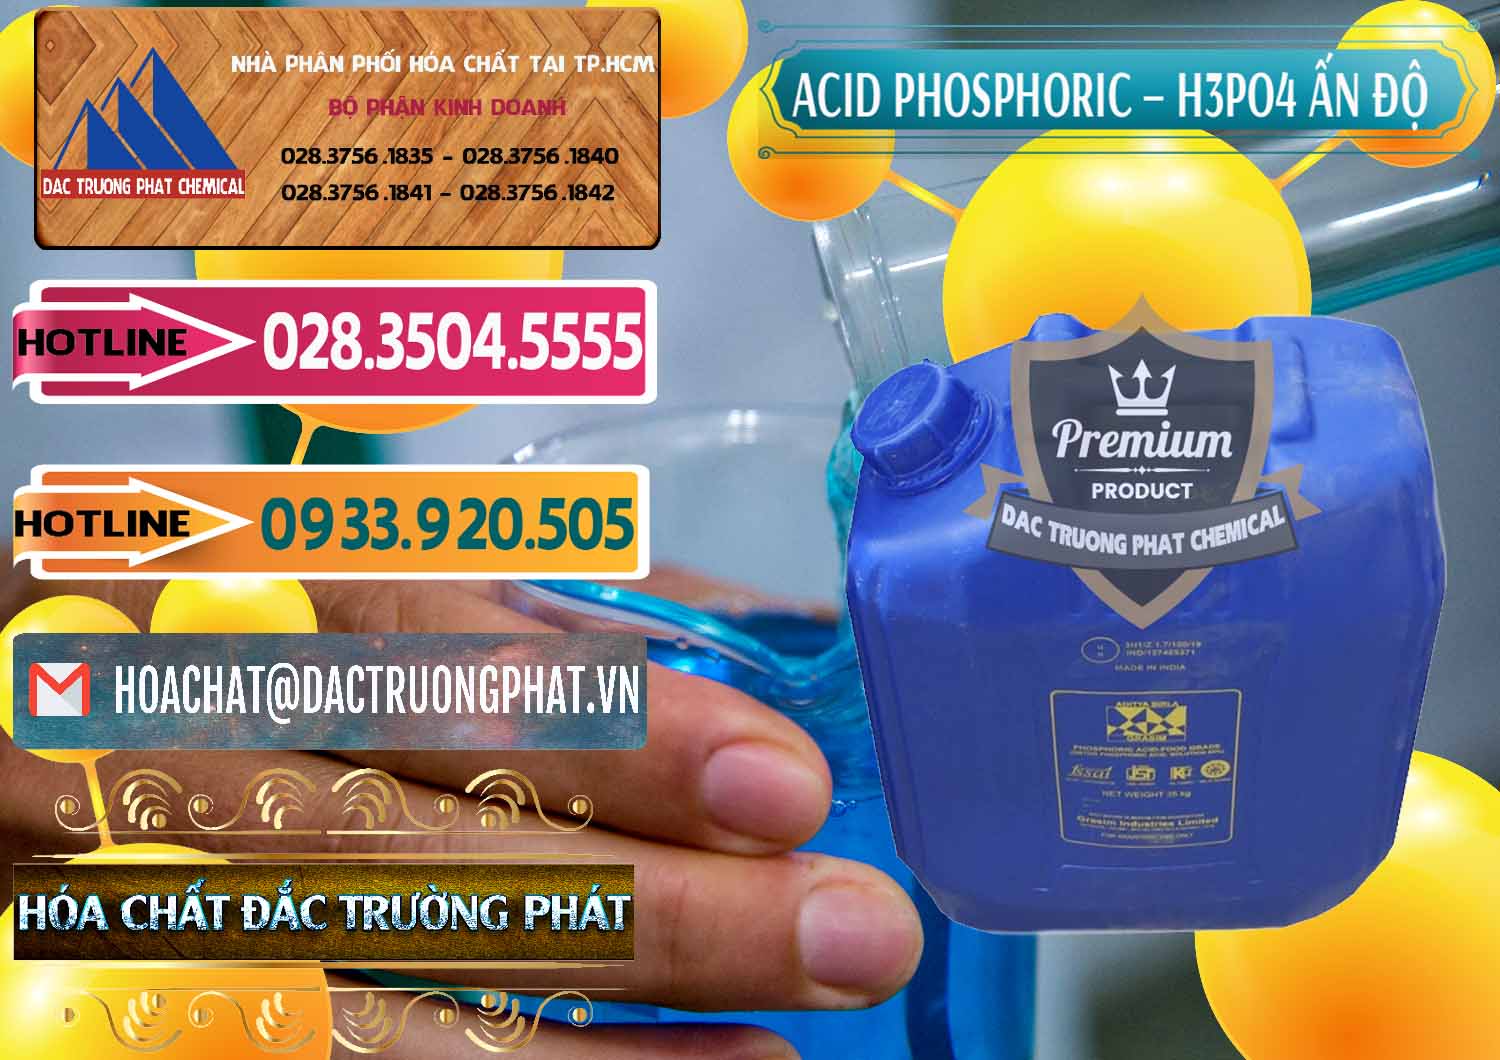 Chuyên kinh doanh ( bán ) Axit Phosphoric H3PO4 85% Ấn Độ - 0350 - Nơi chuyên cung ứng & phân phối hóa chất tại TP.HCM - dactruongphat.vn